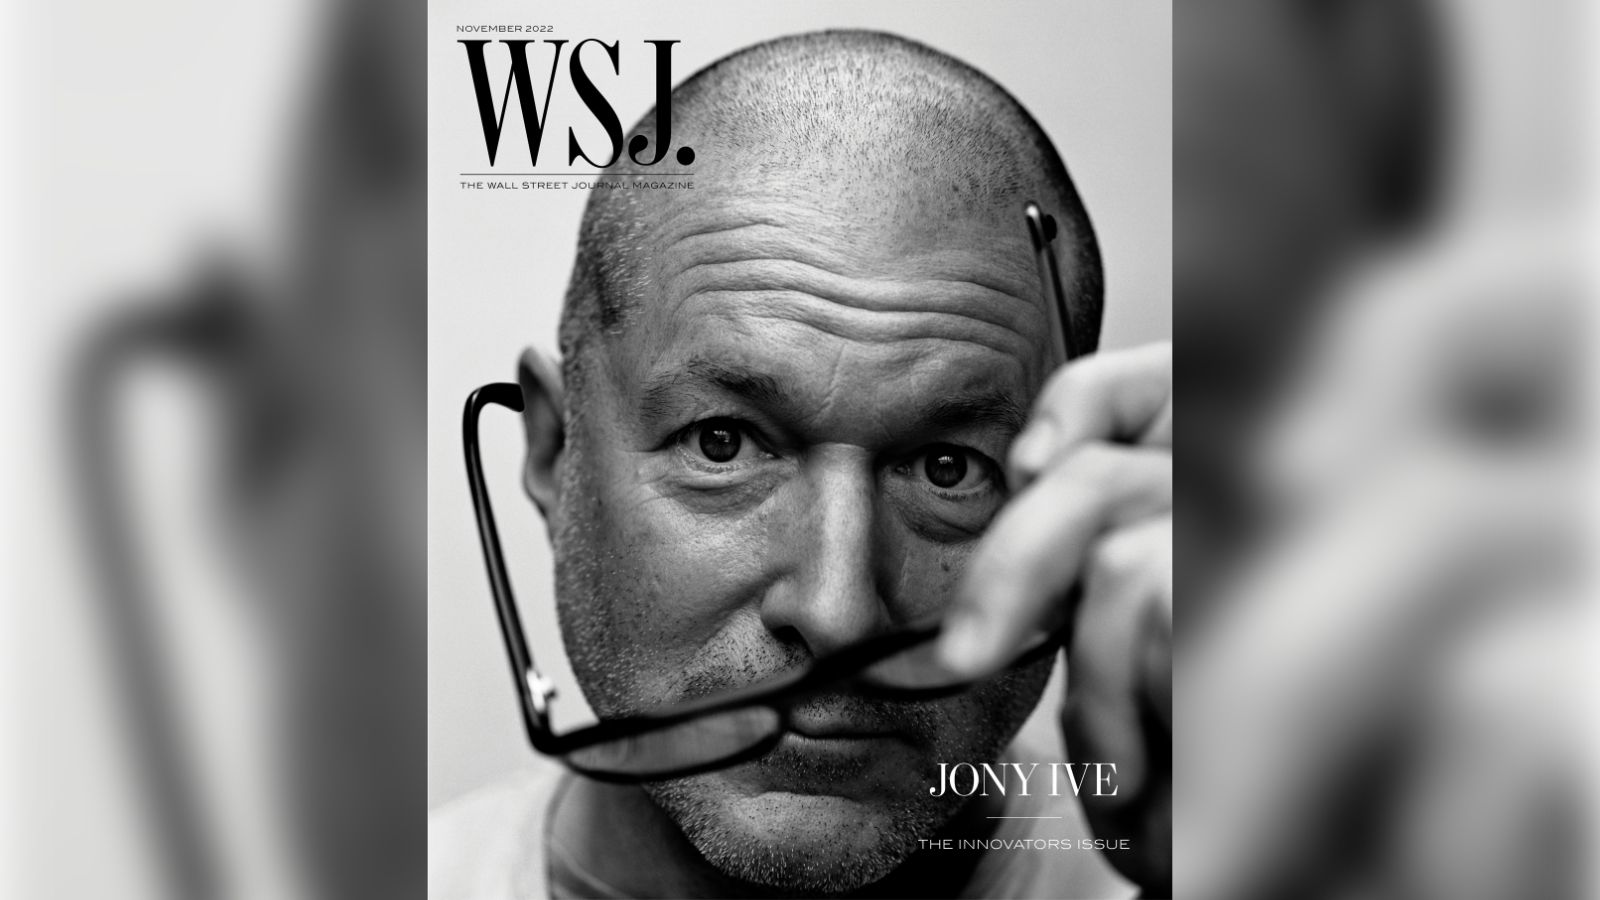 Джони Айв появился на обложке журнала WSJ и рассказал о работе в Apple и философии дизайна